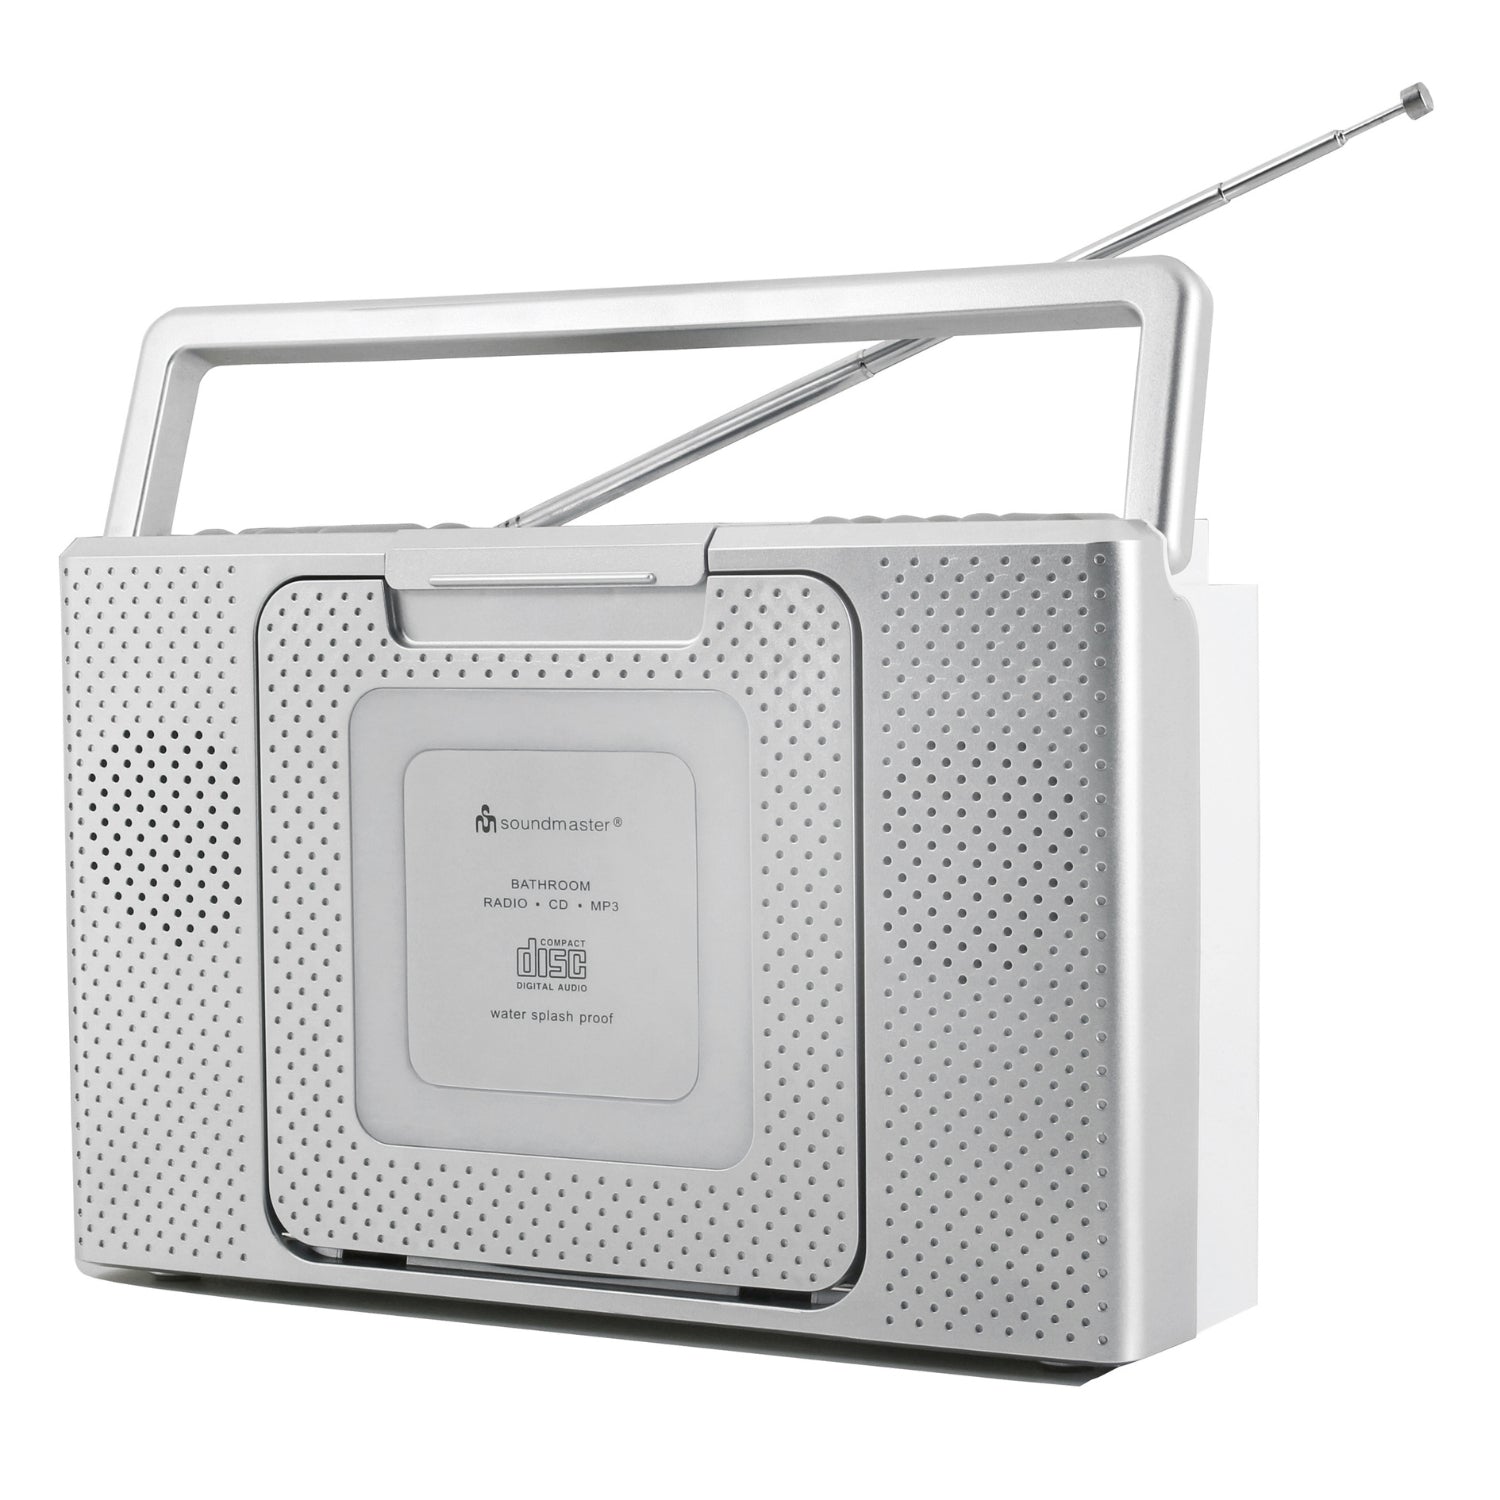 Soundmaster BCD480 radio de salle de bain radio de cuisine lecteur CD horloge IPX4 résistant aux éclaboussures